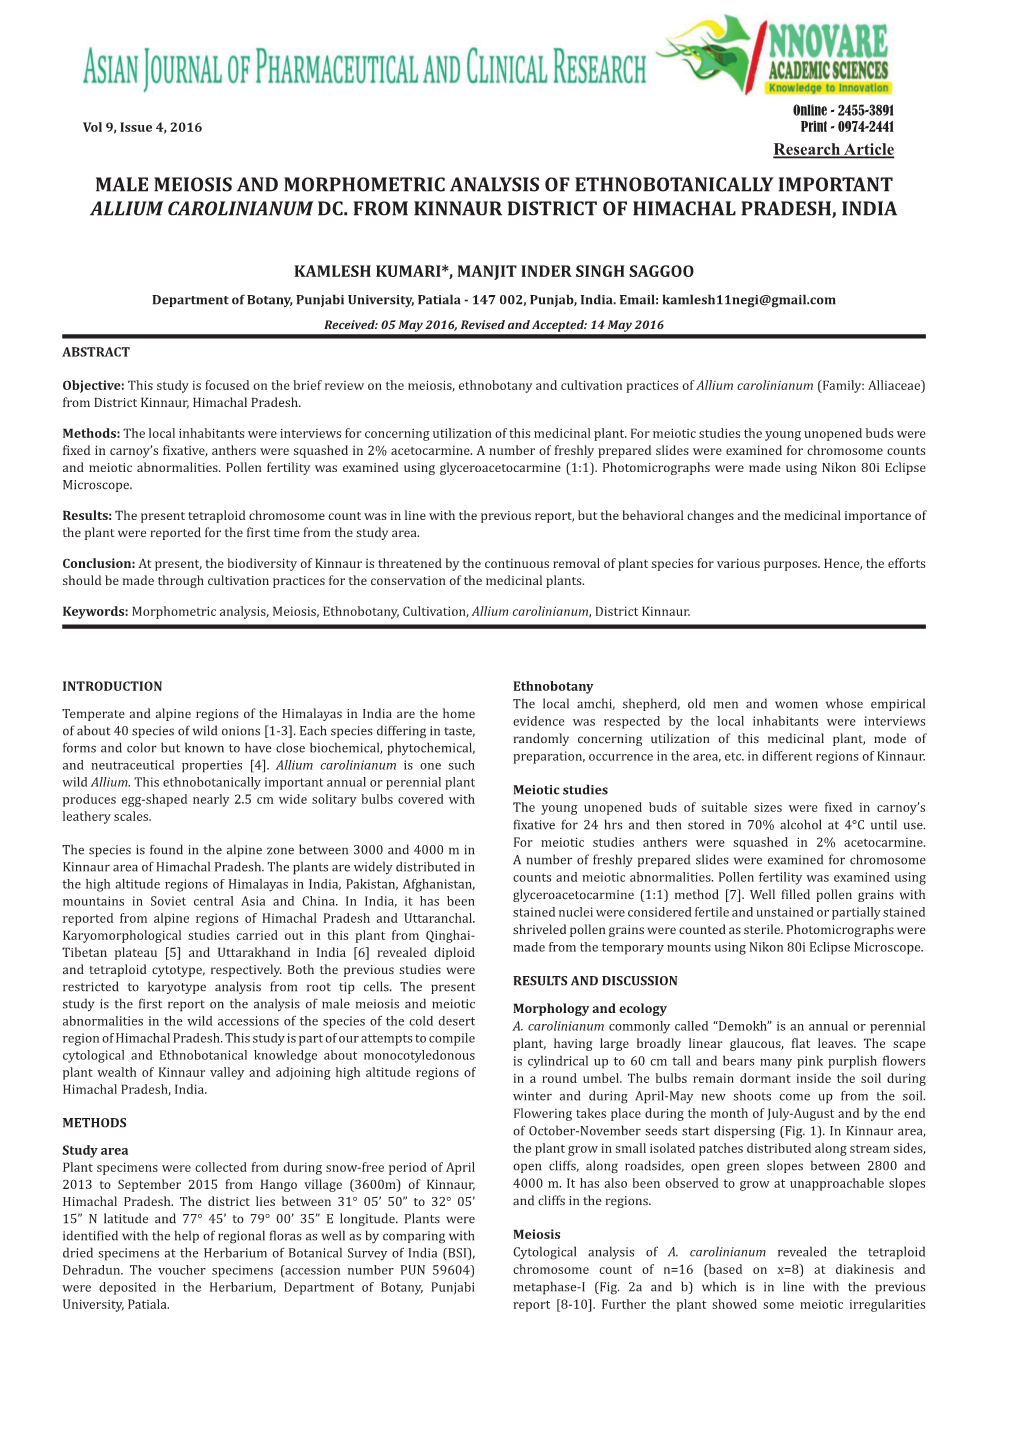 Male Meiosis and Morphometric Analysis of Ethnobotanically Important Allium Carolinianum Dc